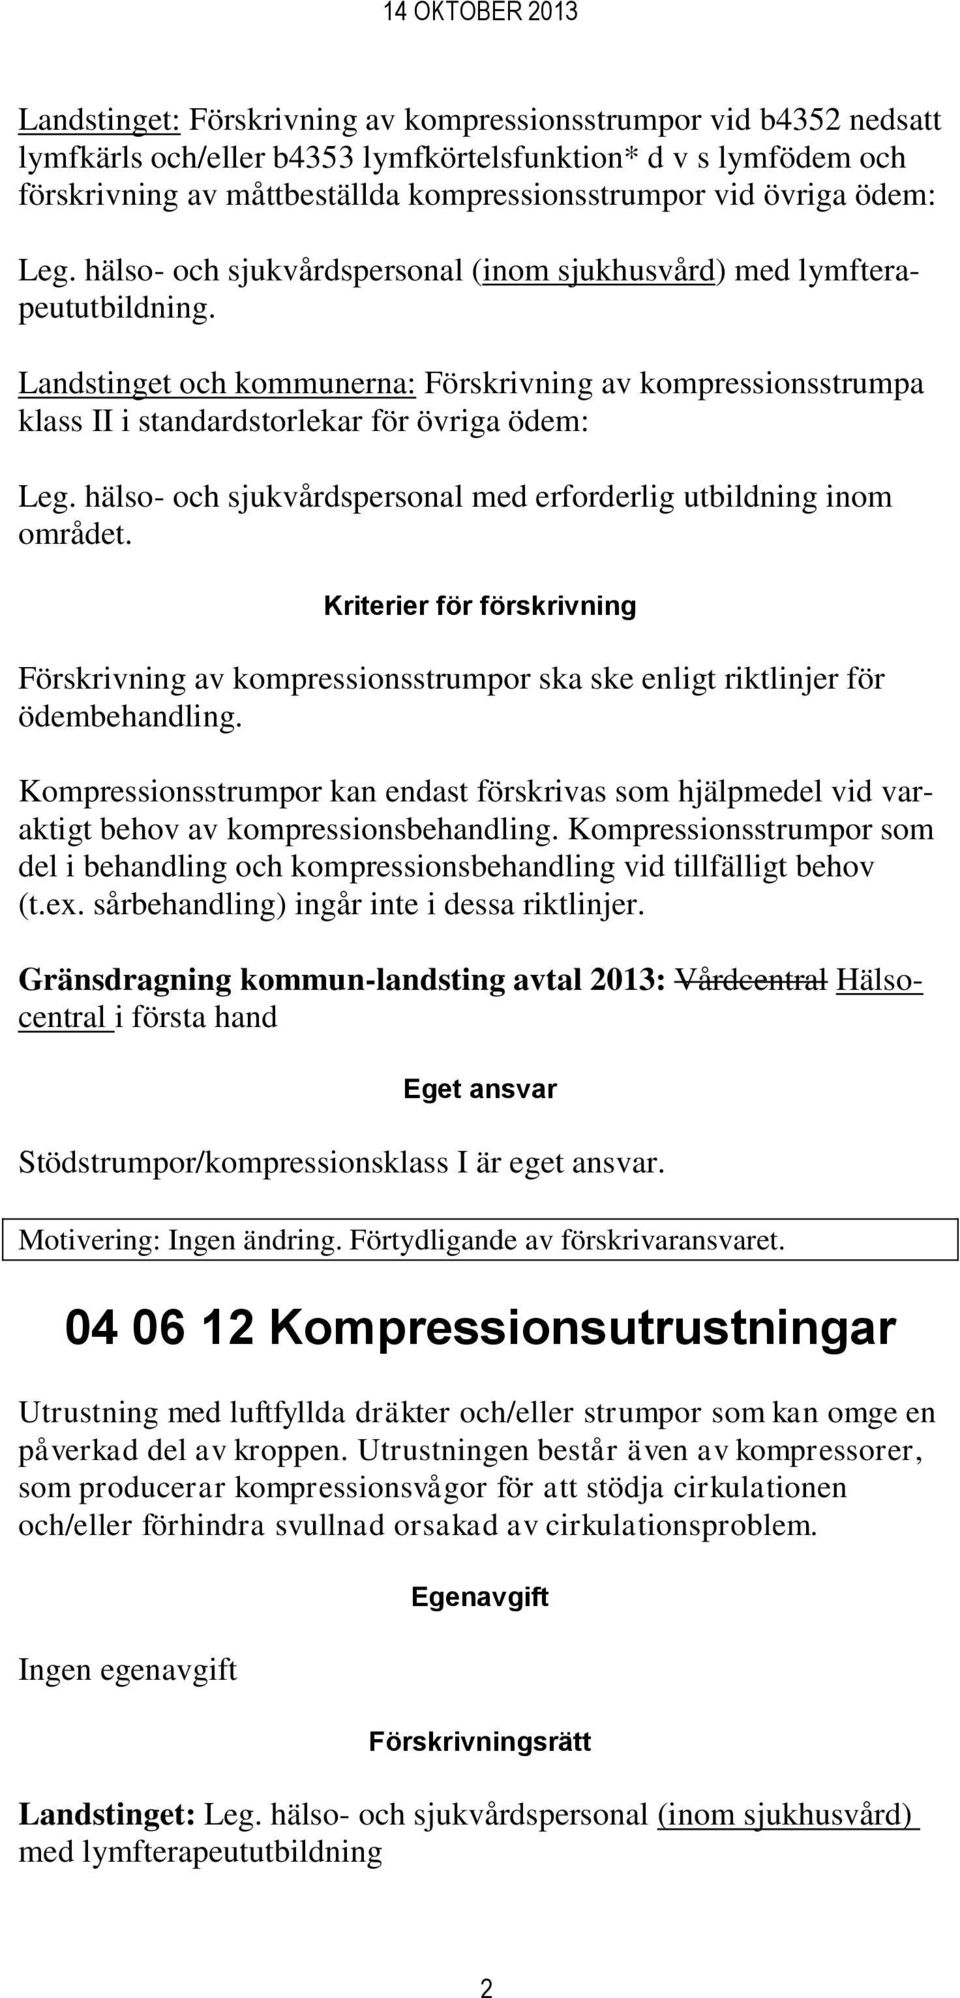 Landstinget och kommunerna: Förskrivning av kompressionsstrumpa klass II i standardstorlekar för övriga ödem: Leg. hälso- och sjukvårdspersonal med erforderlig utbildning inom området.